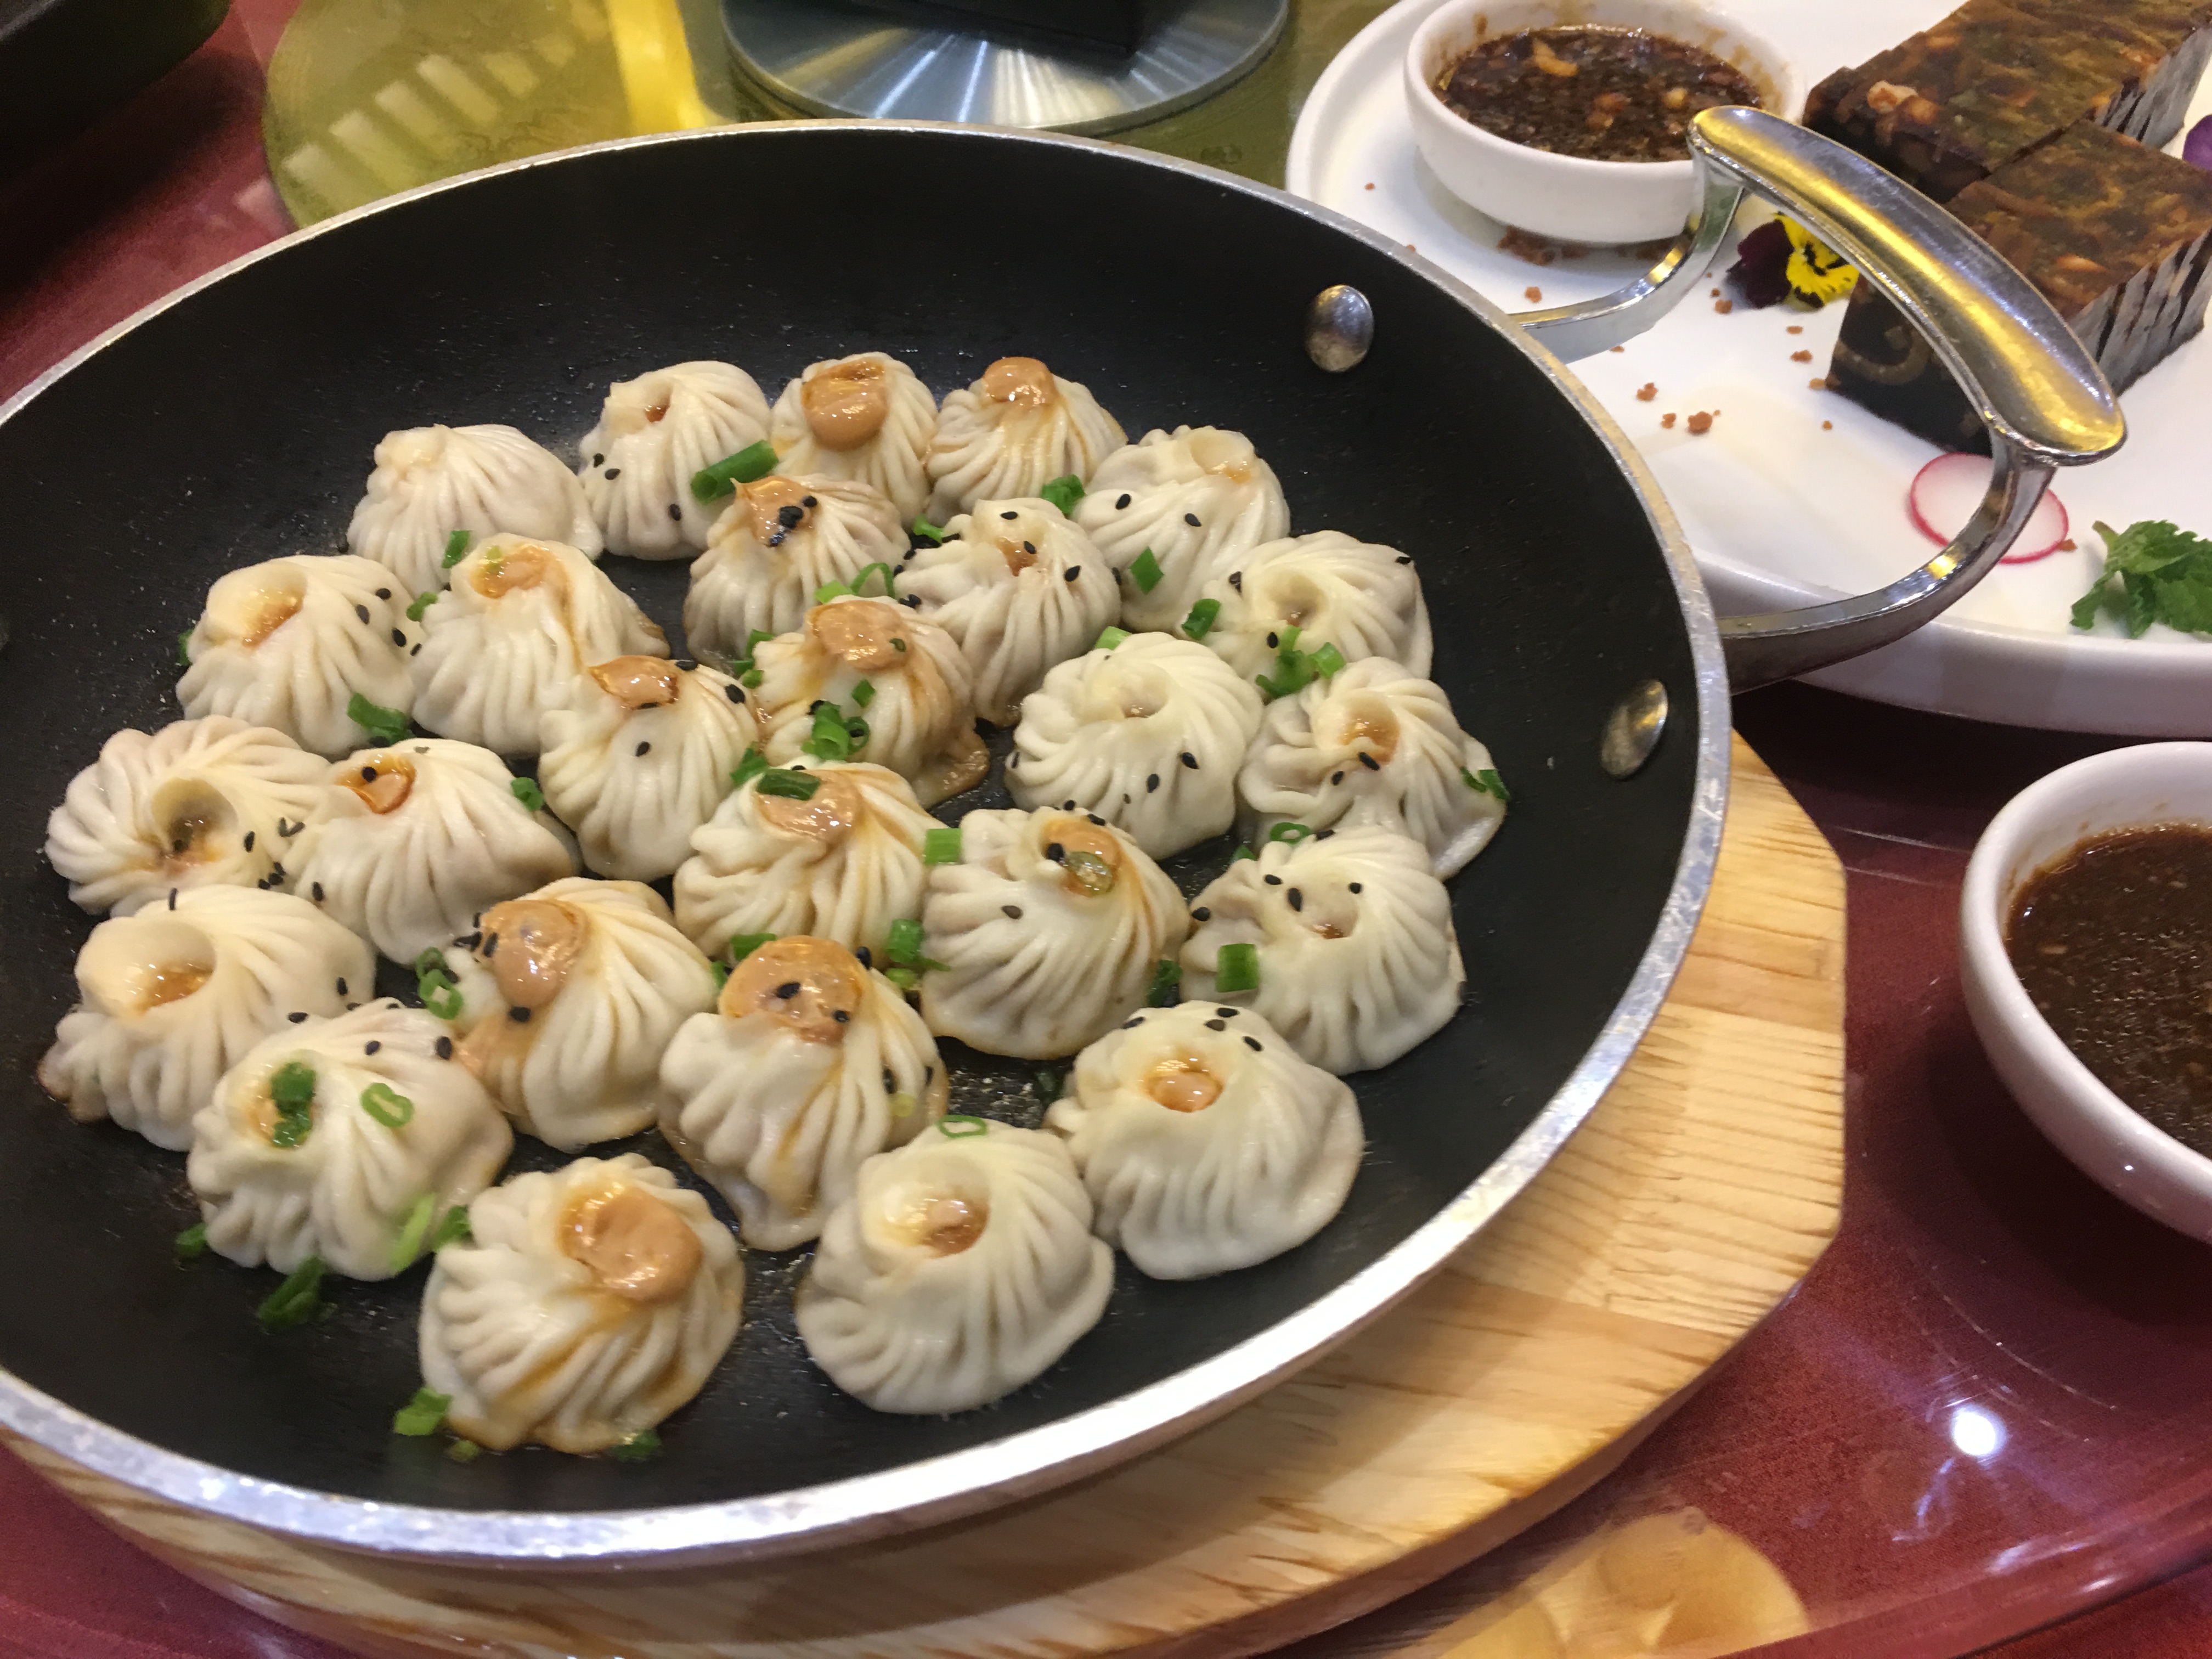 北京丰泽园饭店招牌菜图片